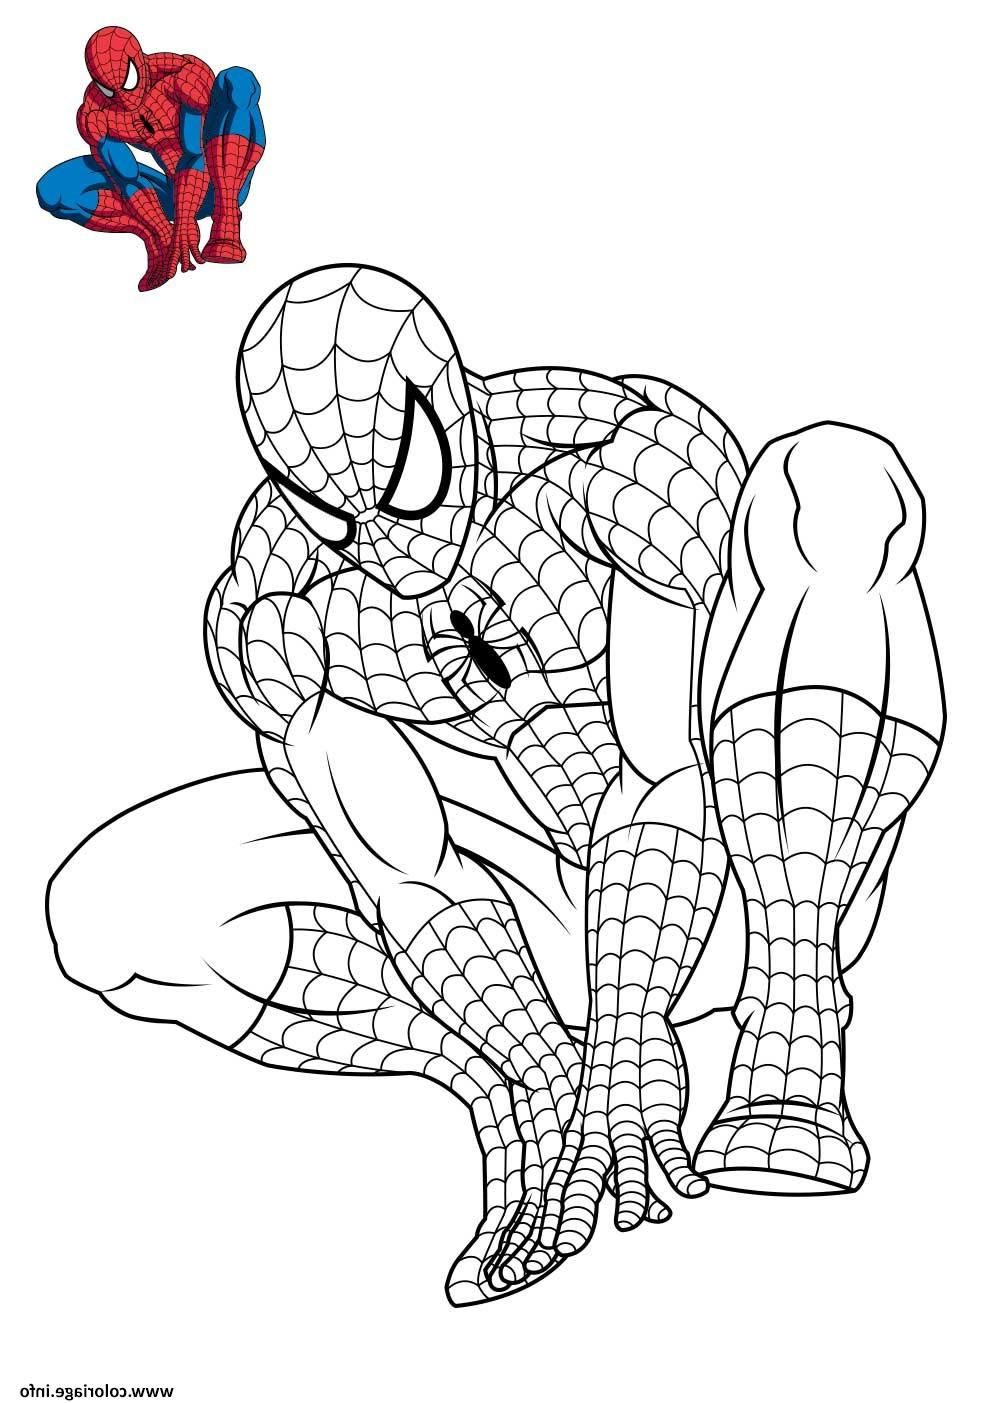 15 Cool De Spiderman A Colorier Photos  Coloriage